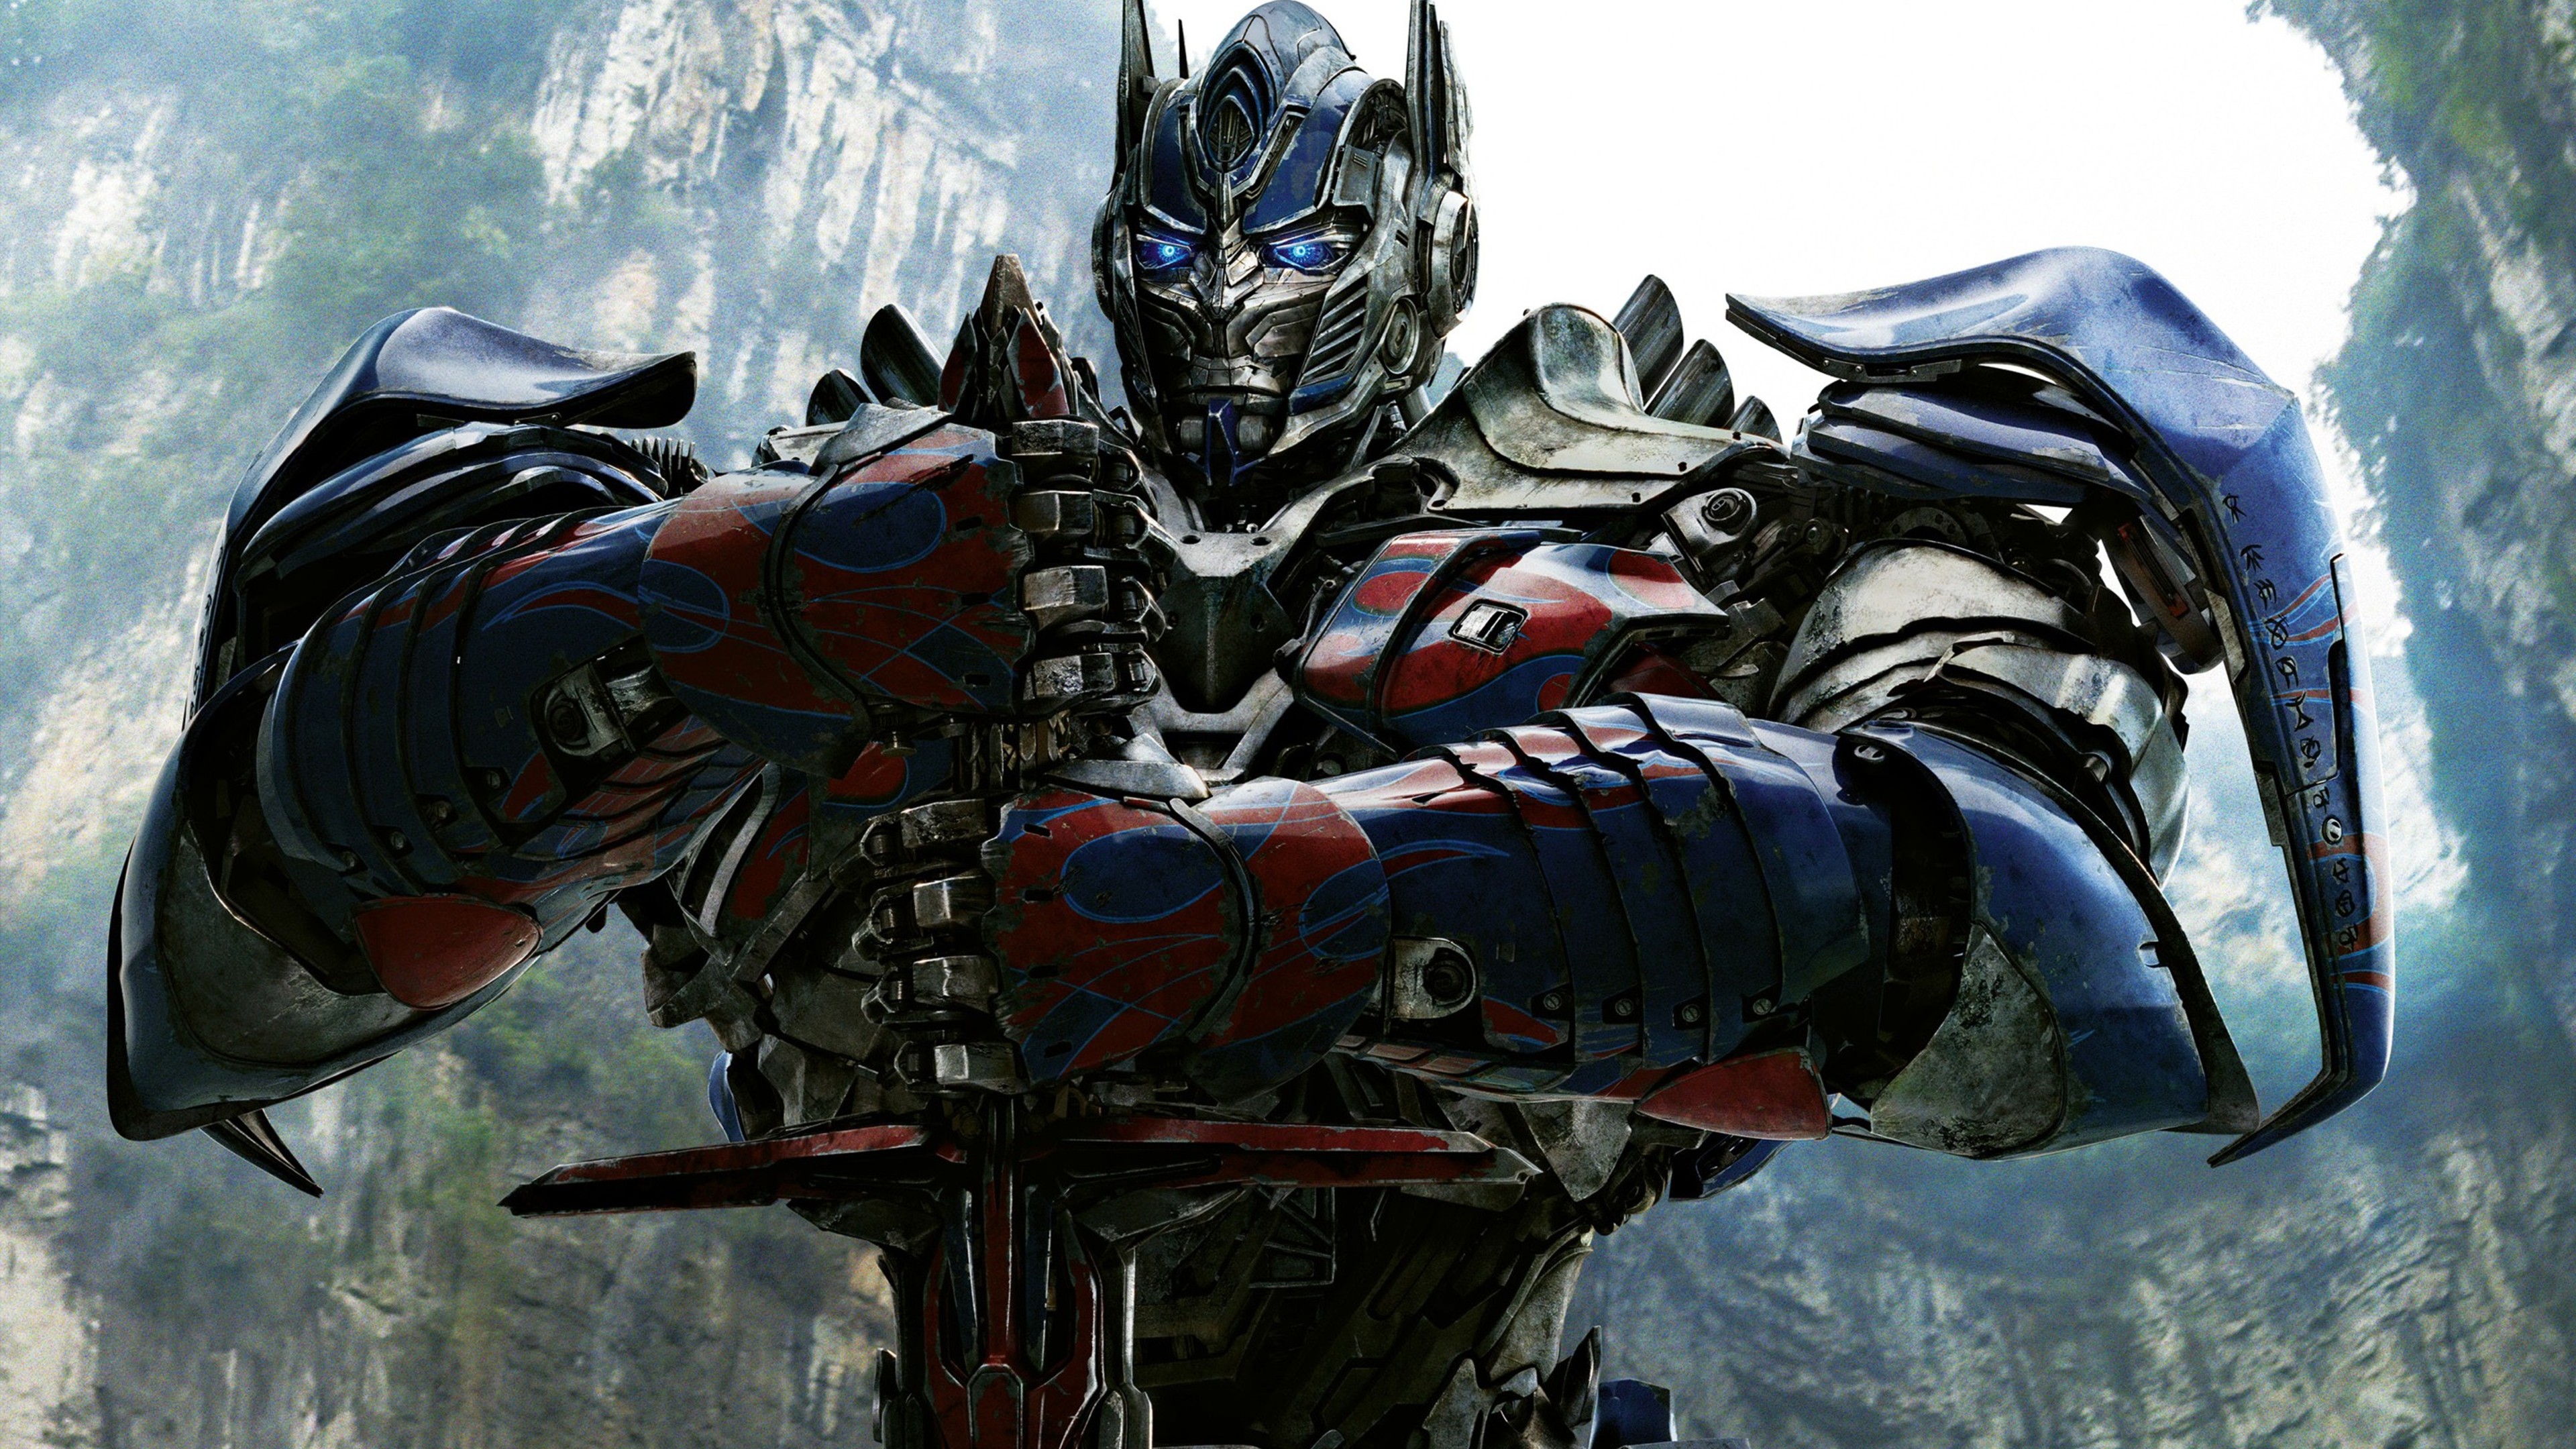 Transformers Backgrounds: Hình nền Transformer sẽ mang đến cho bạn một trải nghiệm hoàn toàn mới về thế giới siêu năng lực của những chiến binh robot. Dù là bối cảnh chiến trường, tàu vũ trụ hay khu đô thị, đây chắc chắn sẽ là một bức ảnh lý tưởng để trang trí màn hình của bạn.